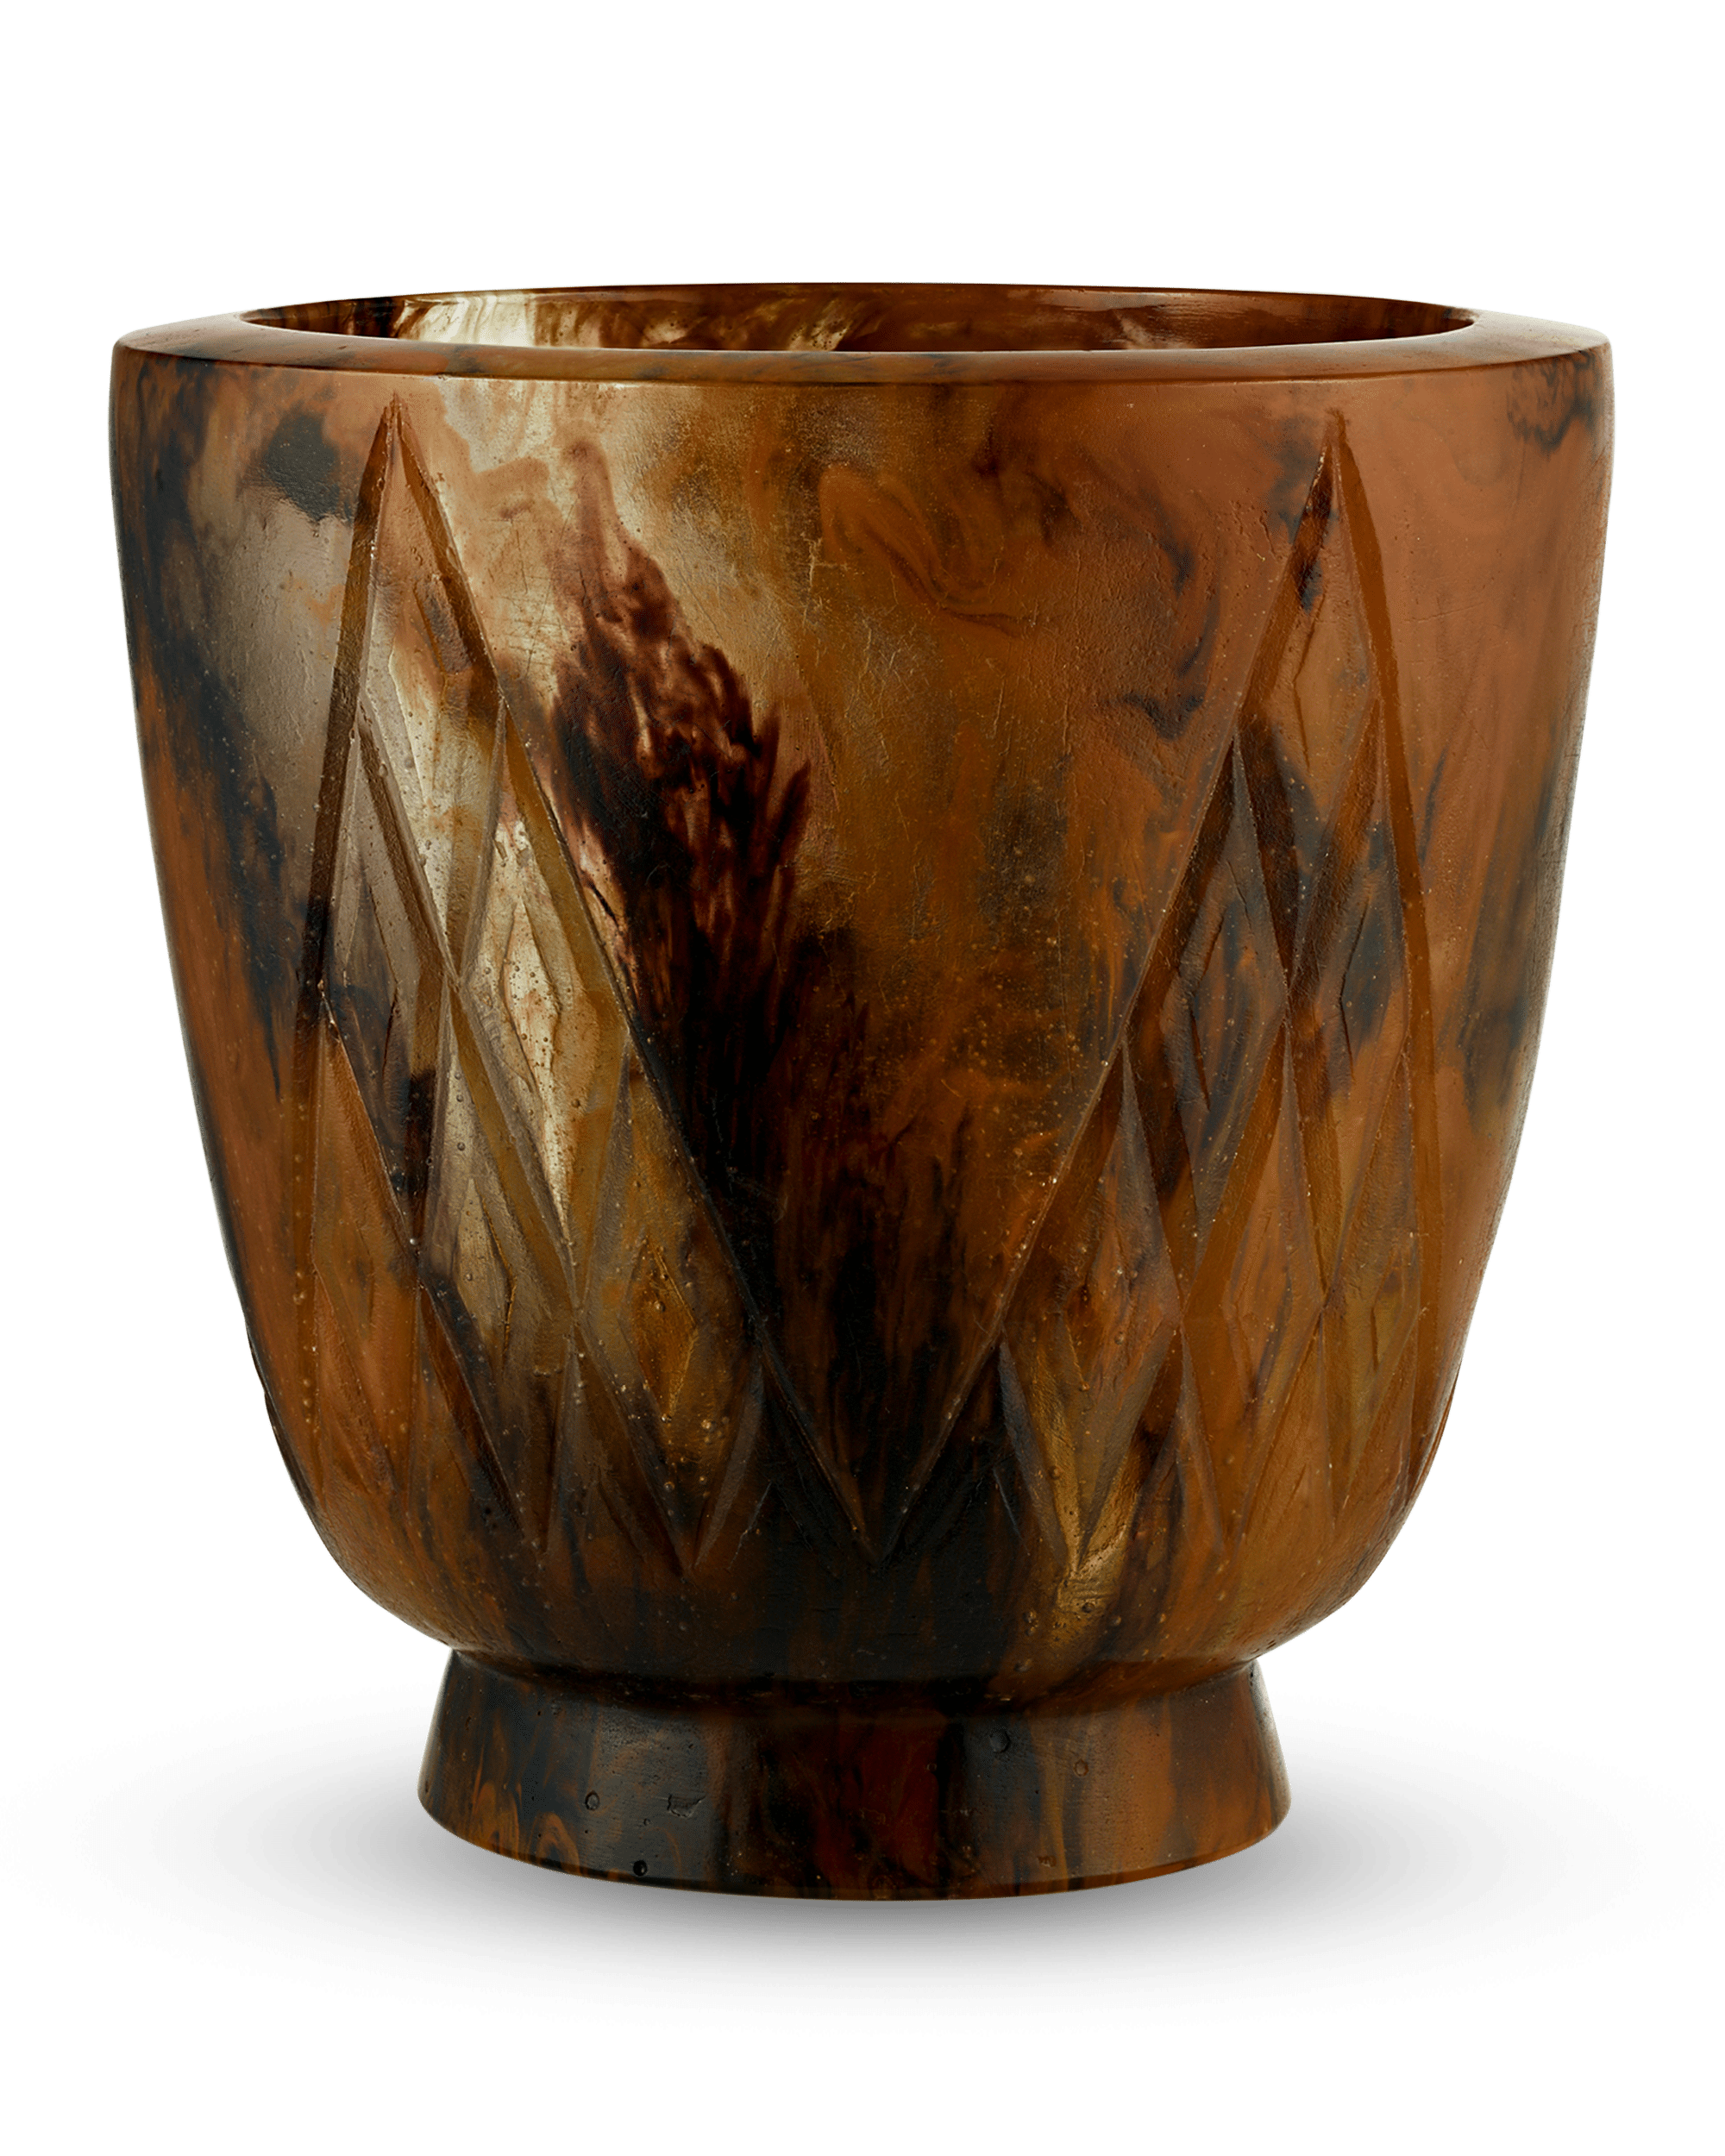 Pâte-de-cristal Vase by François-Emile Décorchement